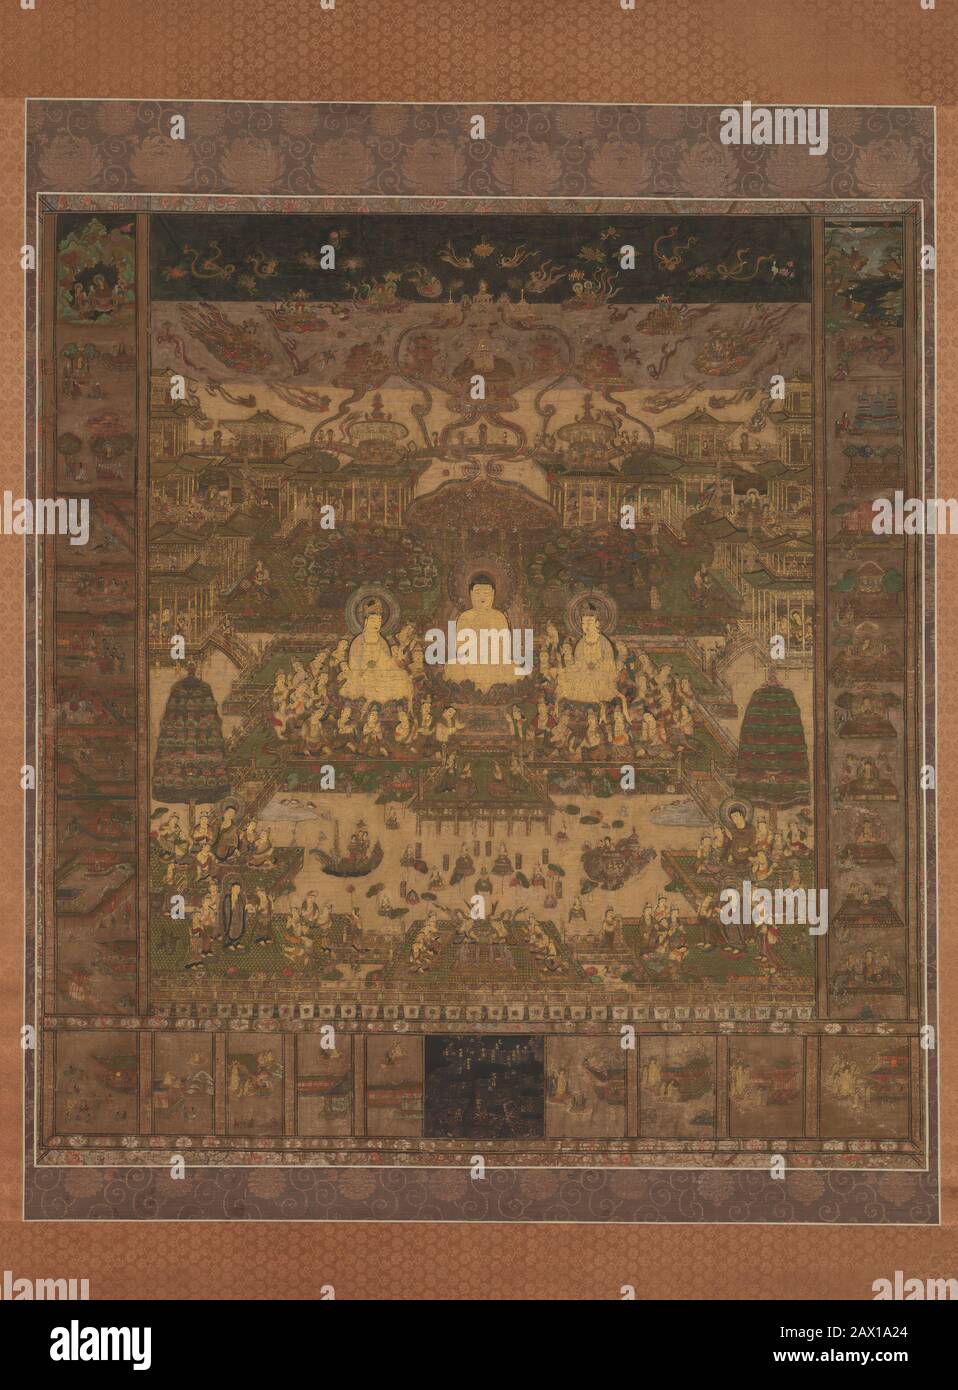 Taima Mandala, probablement à la fin du XIVe siècle. Amida se trouve au centre du mandala, flanqué des bodhisattvas Seishi et Kannon. Autour de cette scène sont des vignettes du Sutra Contemplation qui enseignent à vivre comment atteindre le salut. Banque D'Images